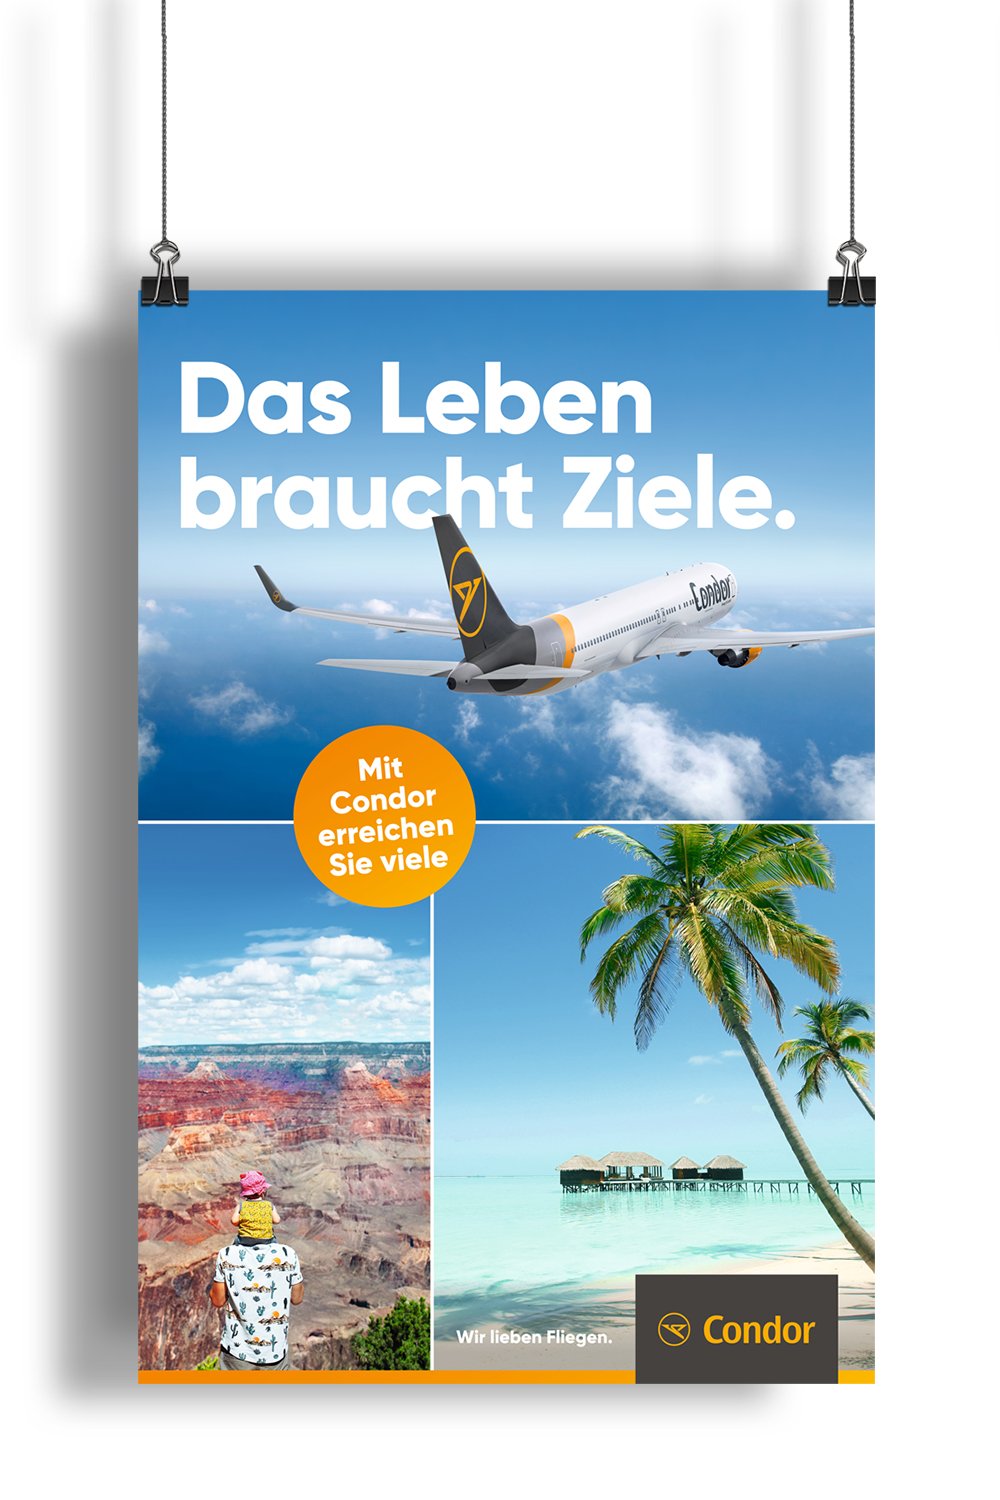 Excite Werbeagentur Condor Plakat mit Headline "Das Leben braucht Ziele."